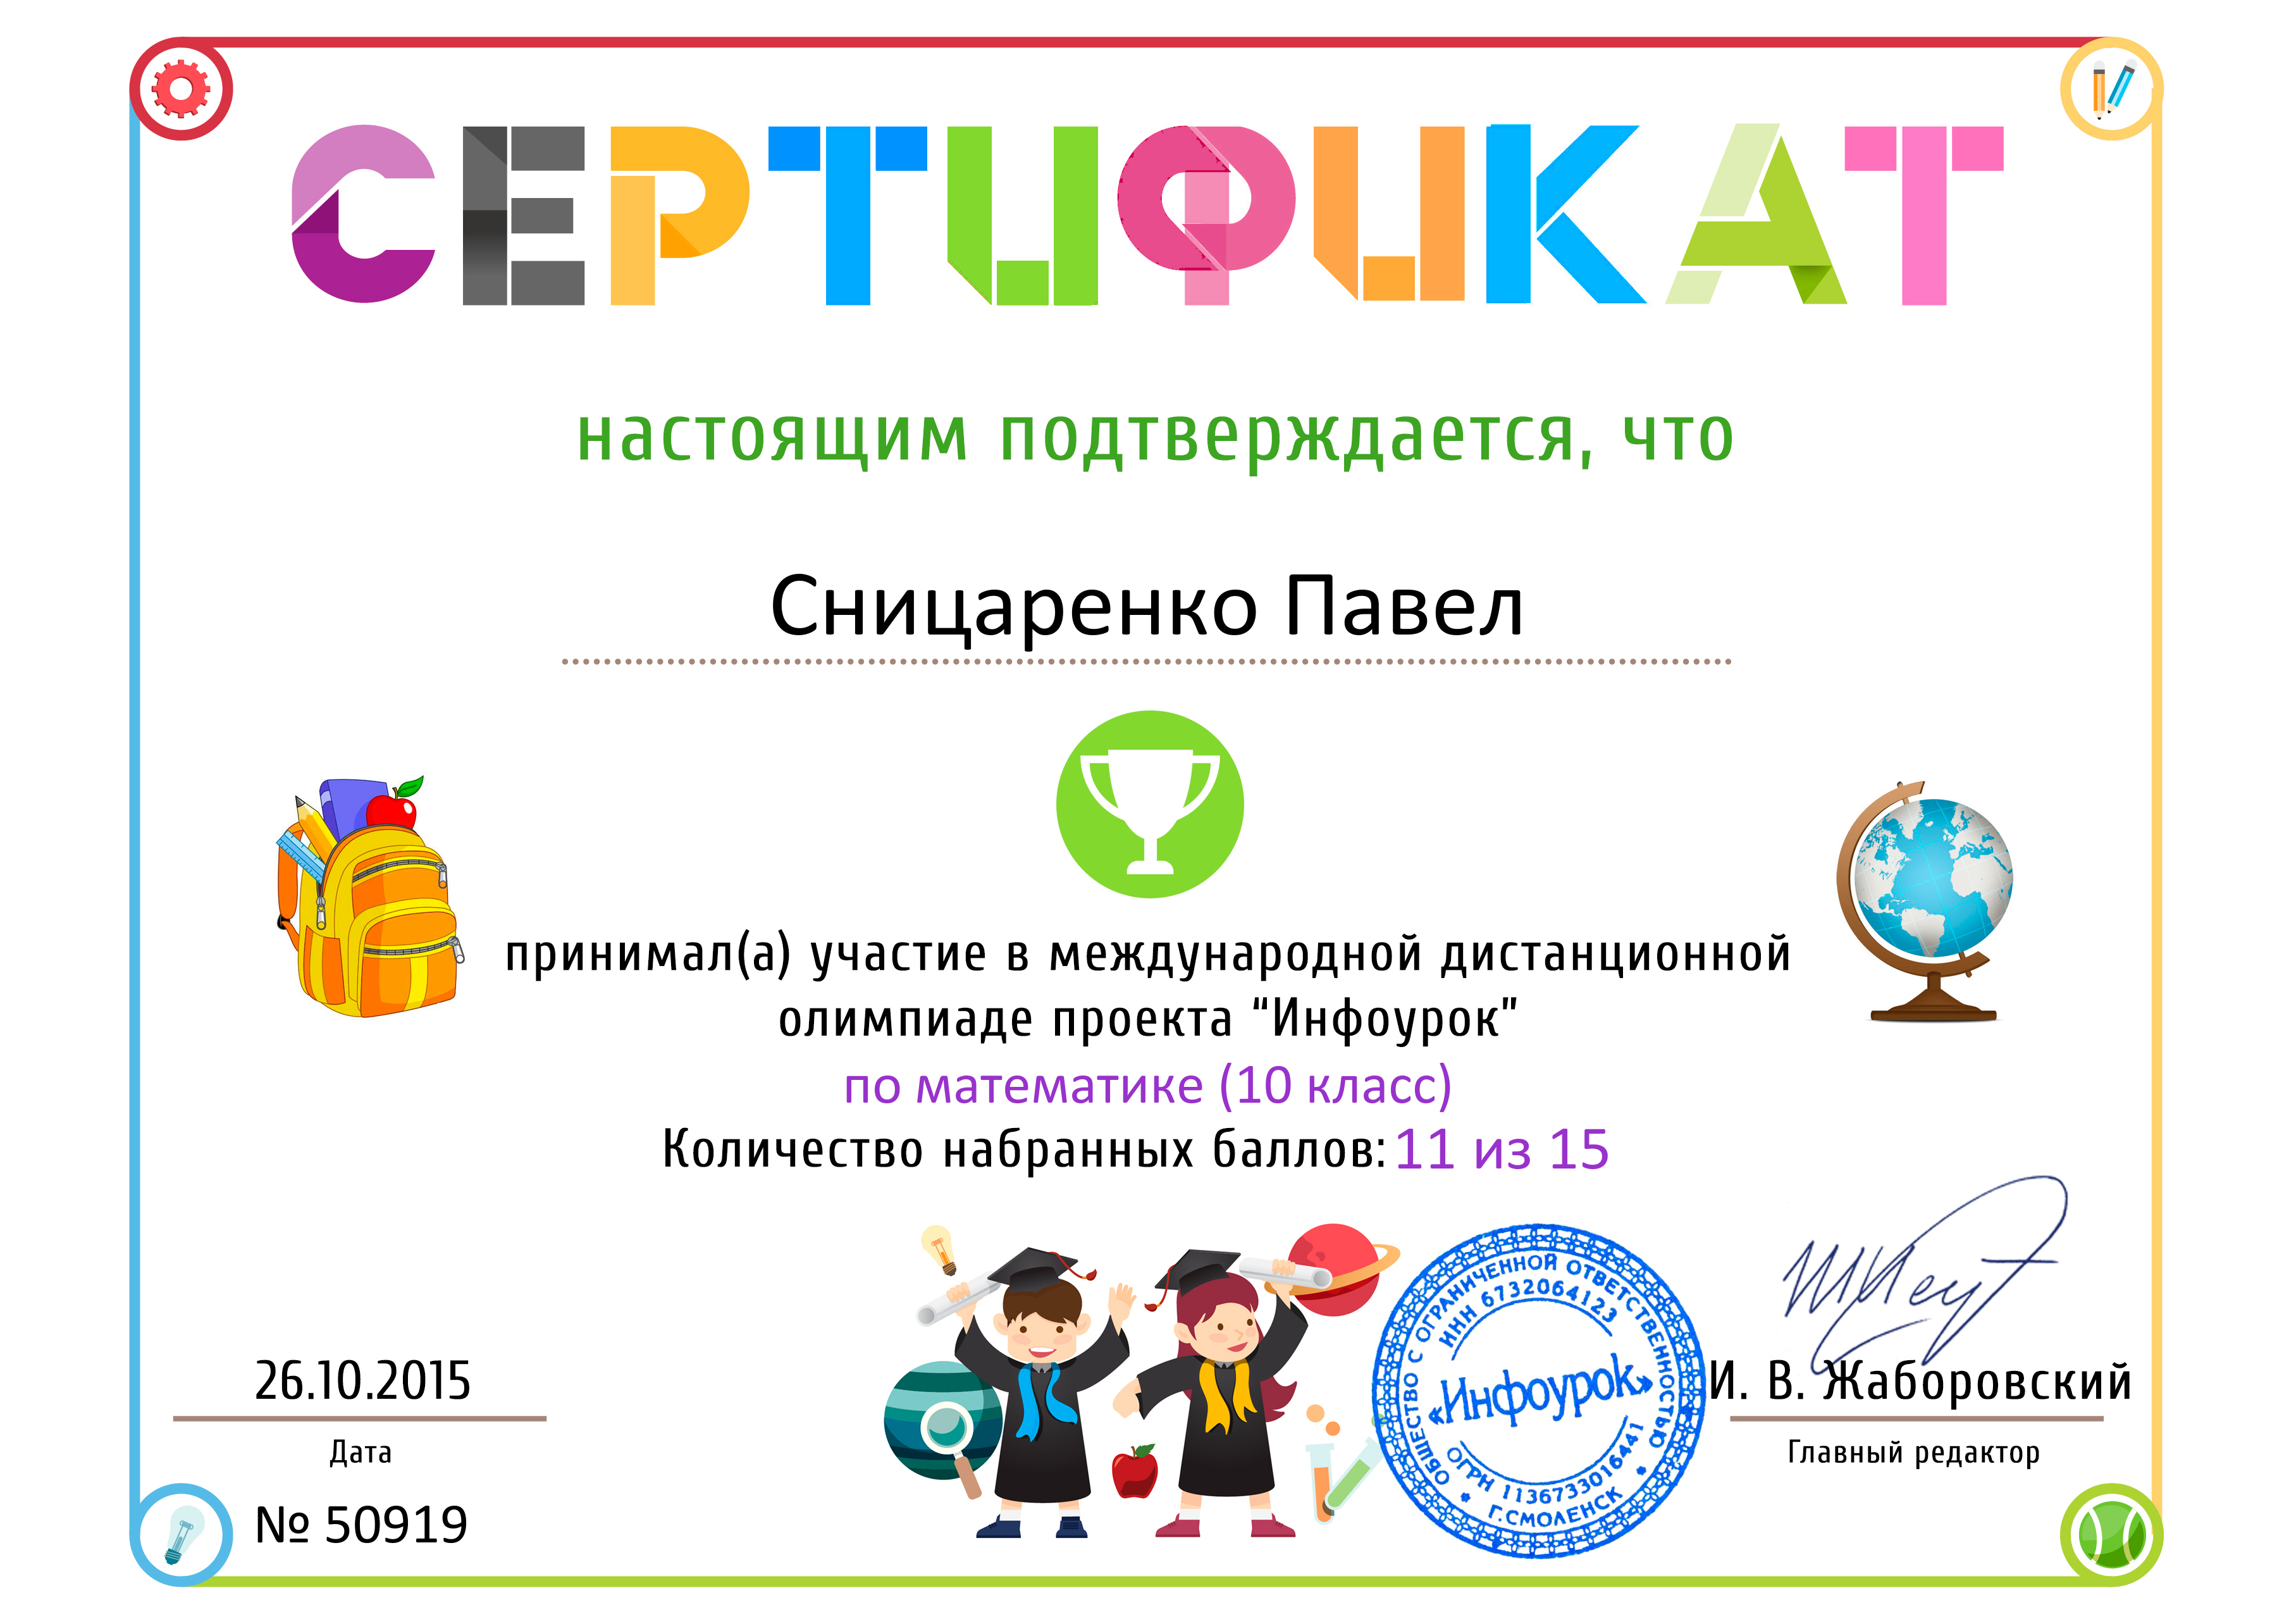 Infourok ru тесты. Сертификат для детей. Грамота и сертификат ребенку. Сертификат для начальной школы.